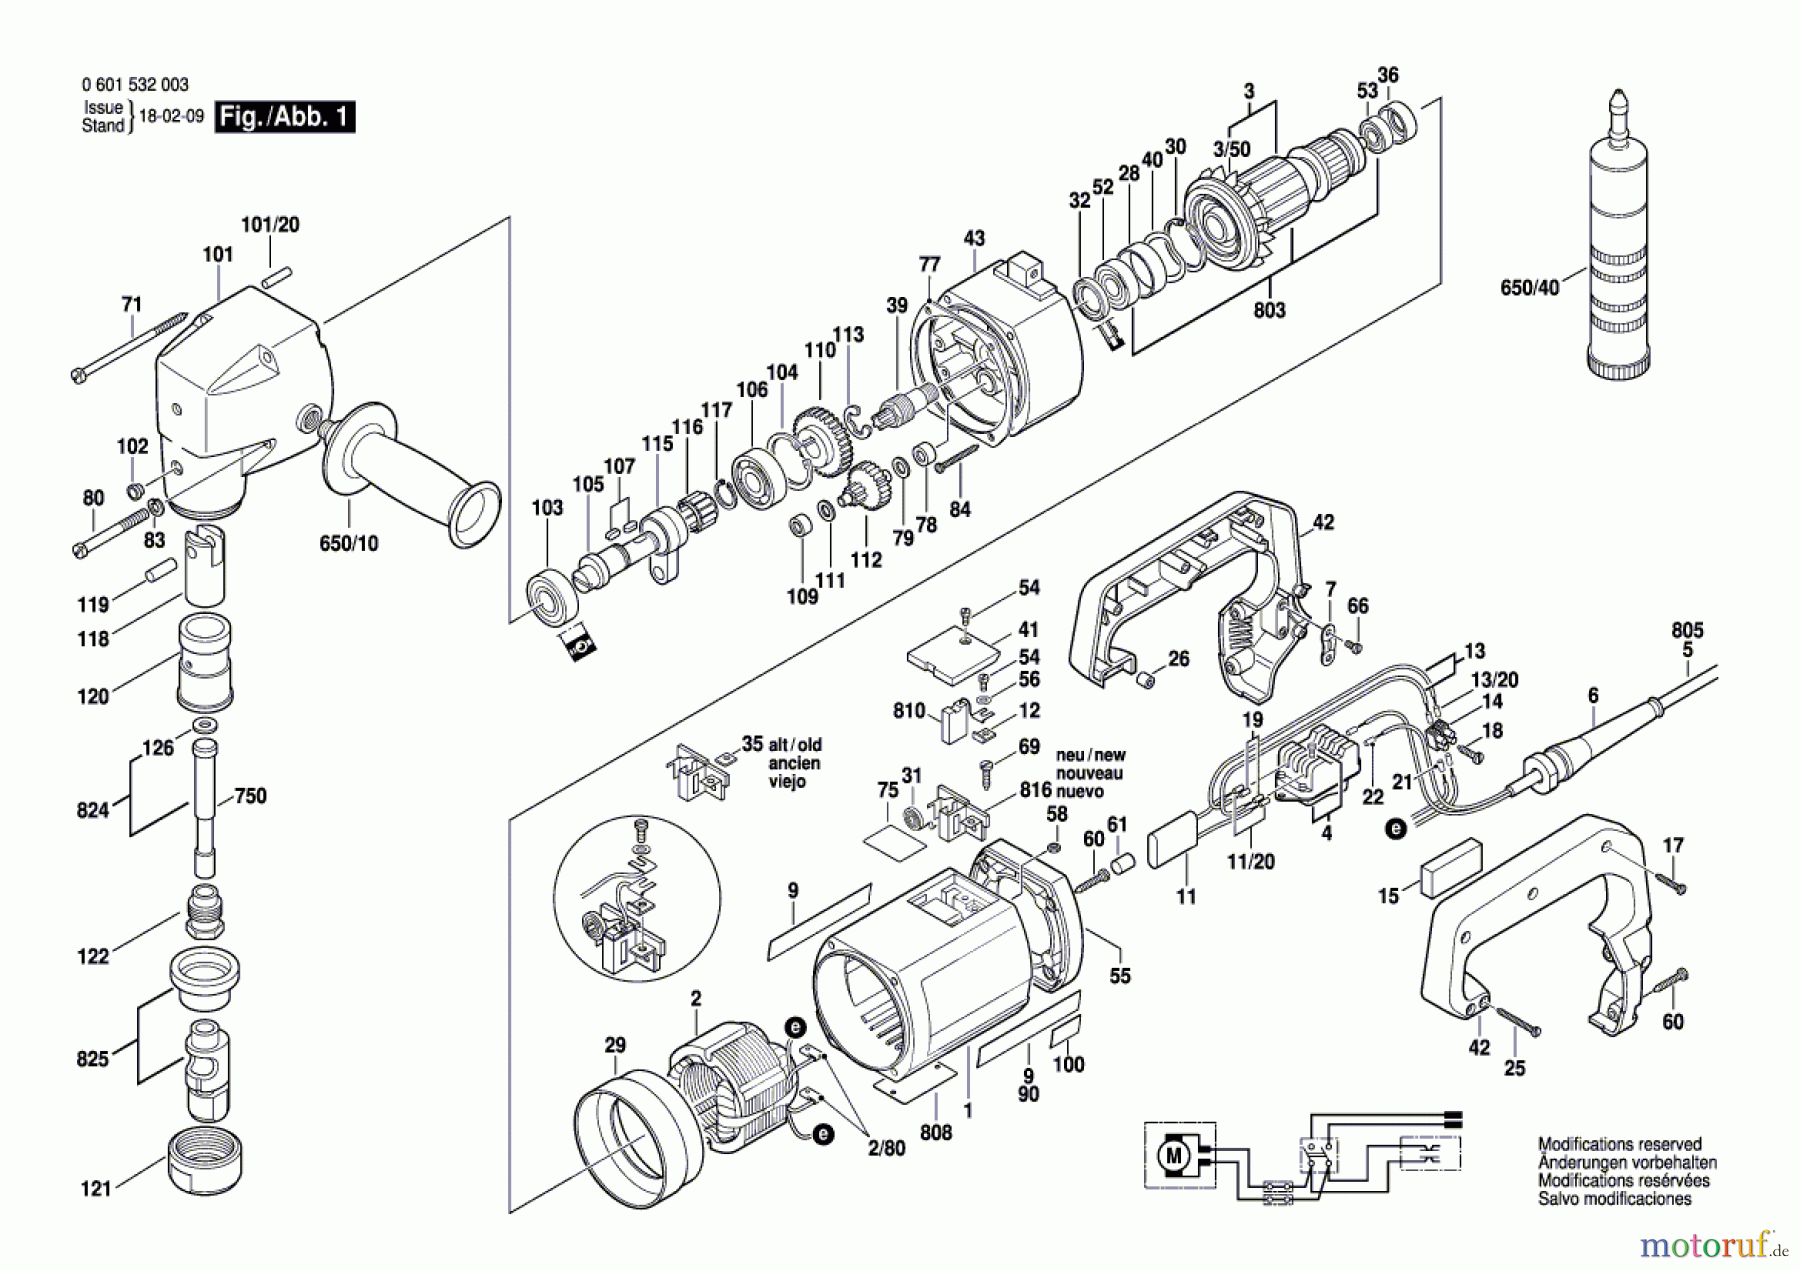  Bosch Werkzeug Nager ---- Seite 1